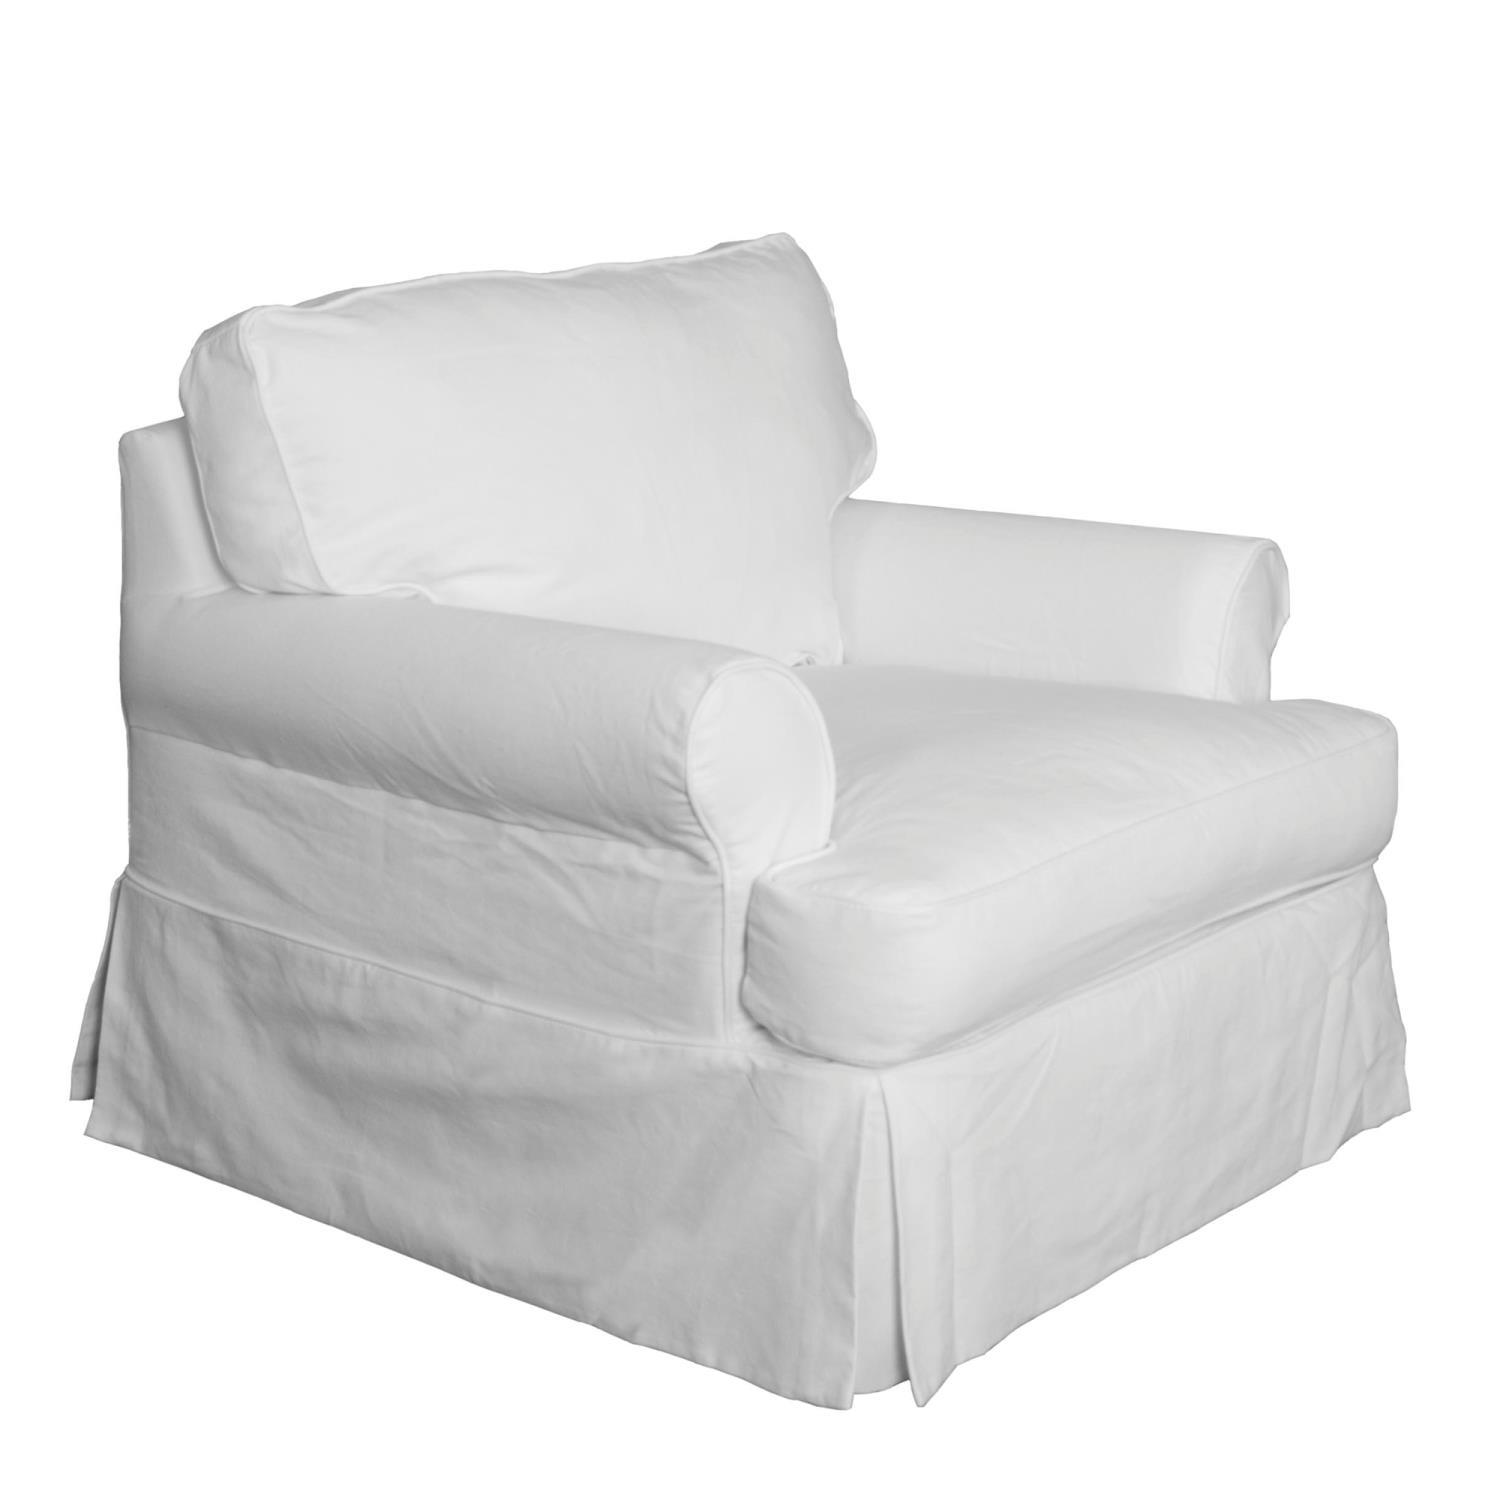 Sunset Trading Horizon Slipcovered T-Cushion Chair SU-117620-423080